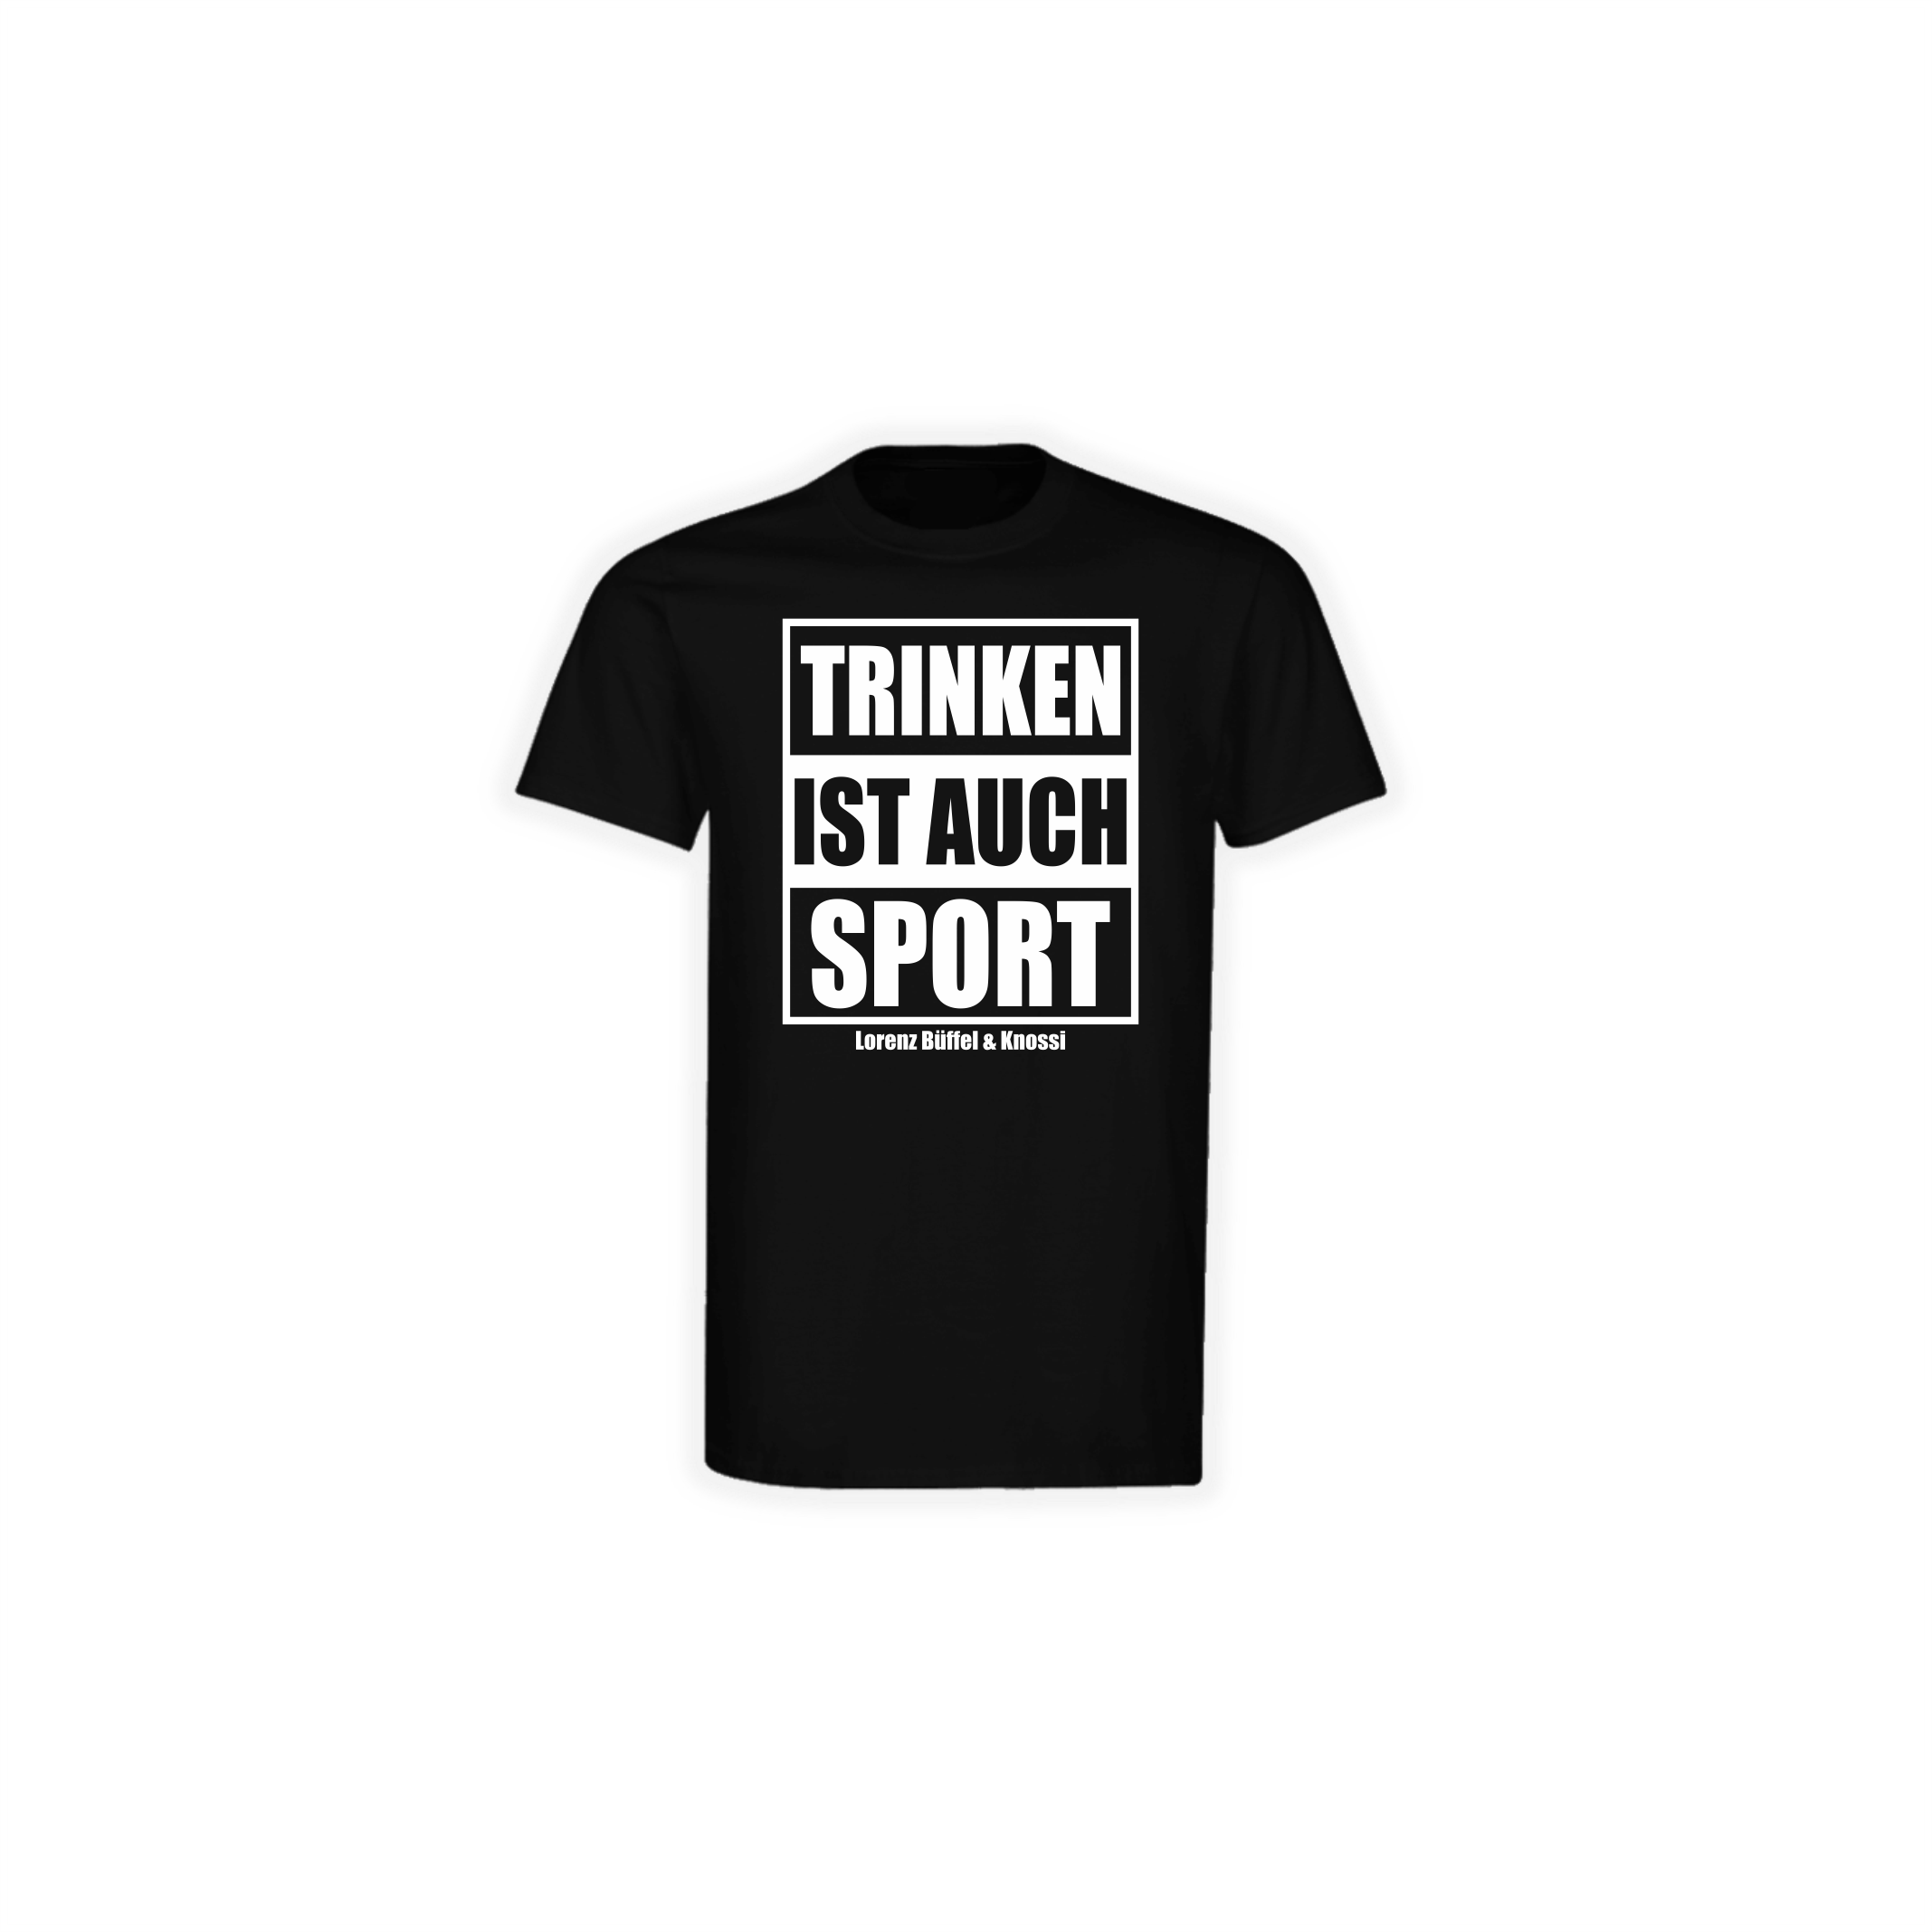 T-Shirt "TRINKEN IST AUCH SPORT" schwarz